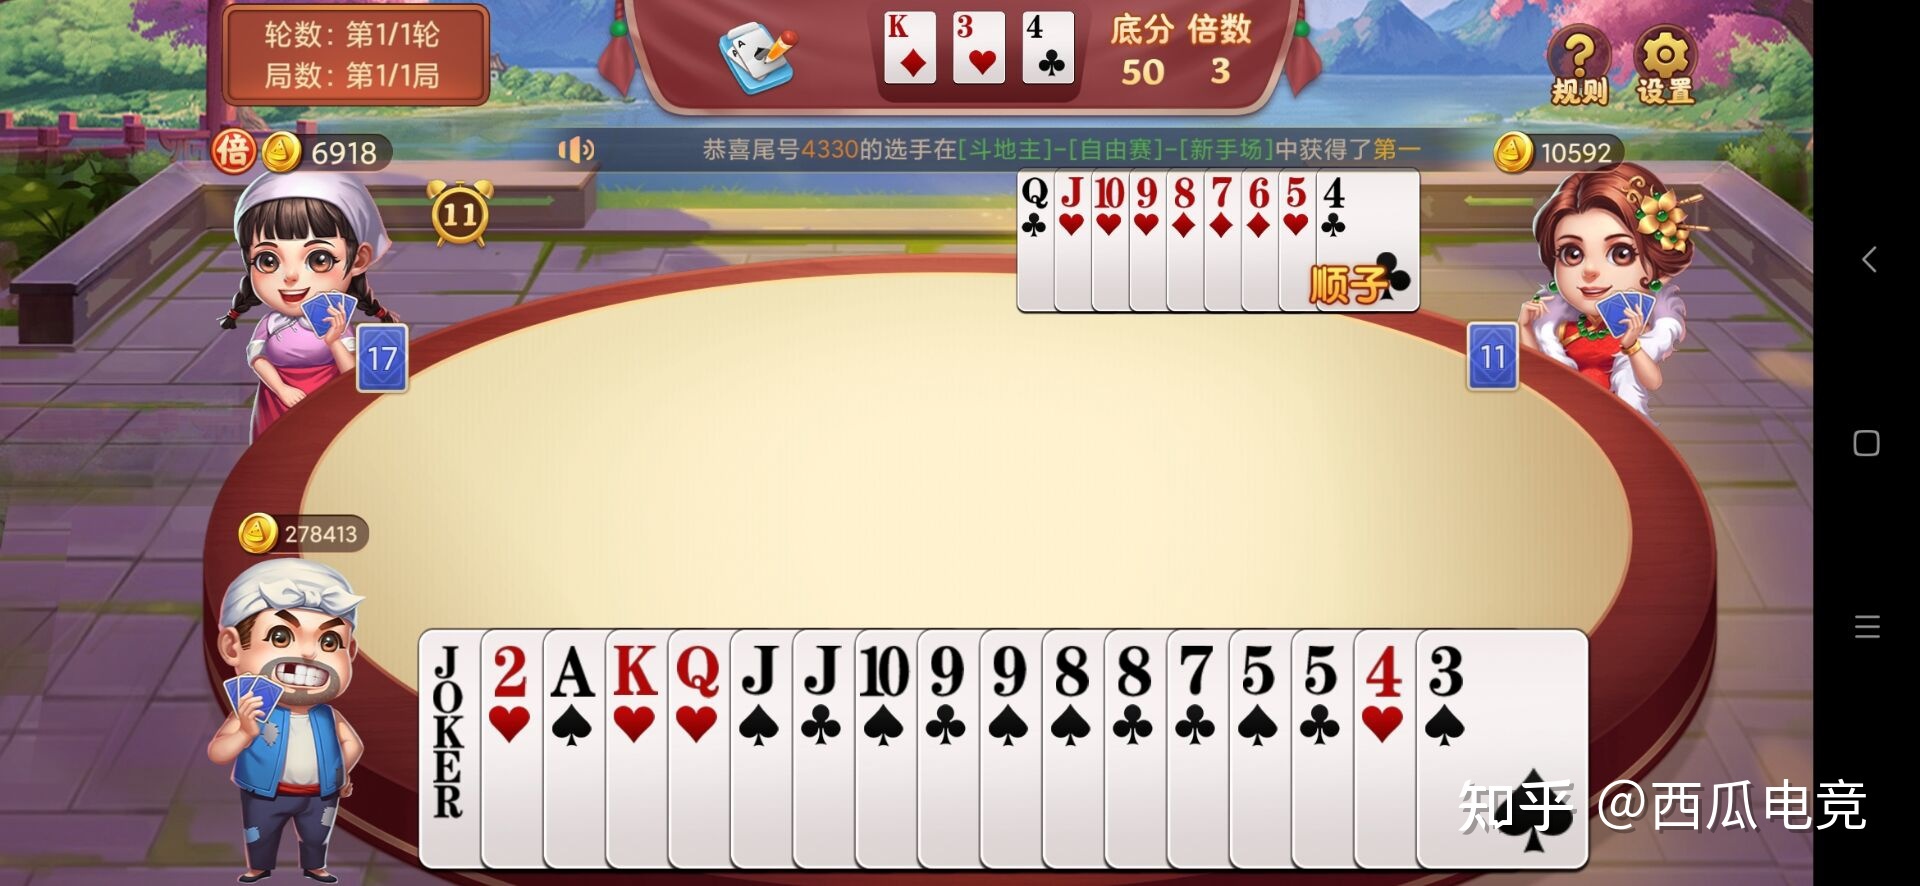 湖南隆回霸扎弹扑克游戏开发公司玩法规则